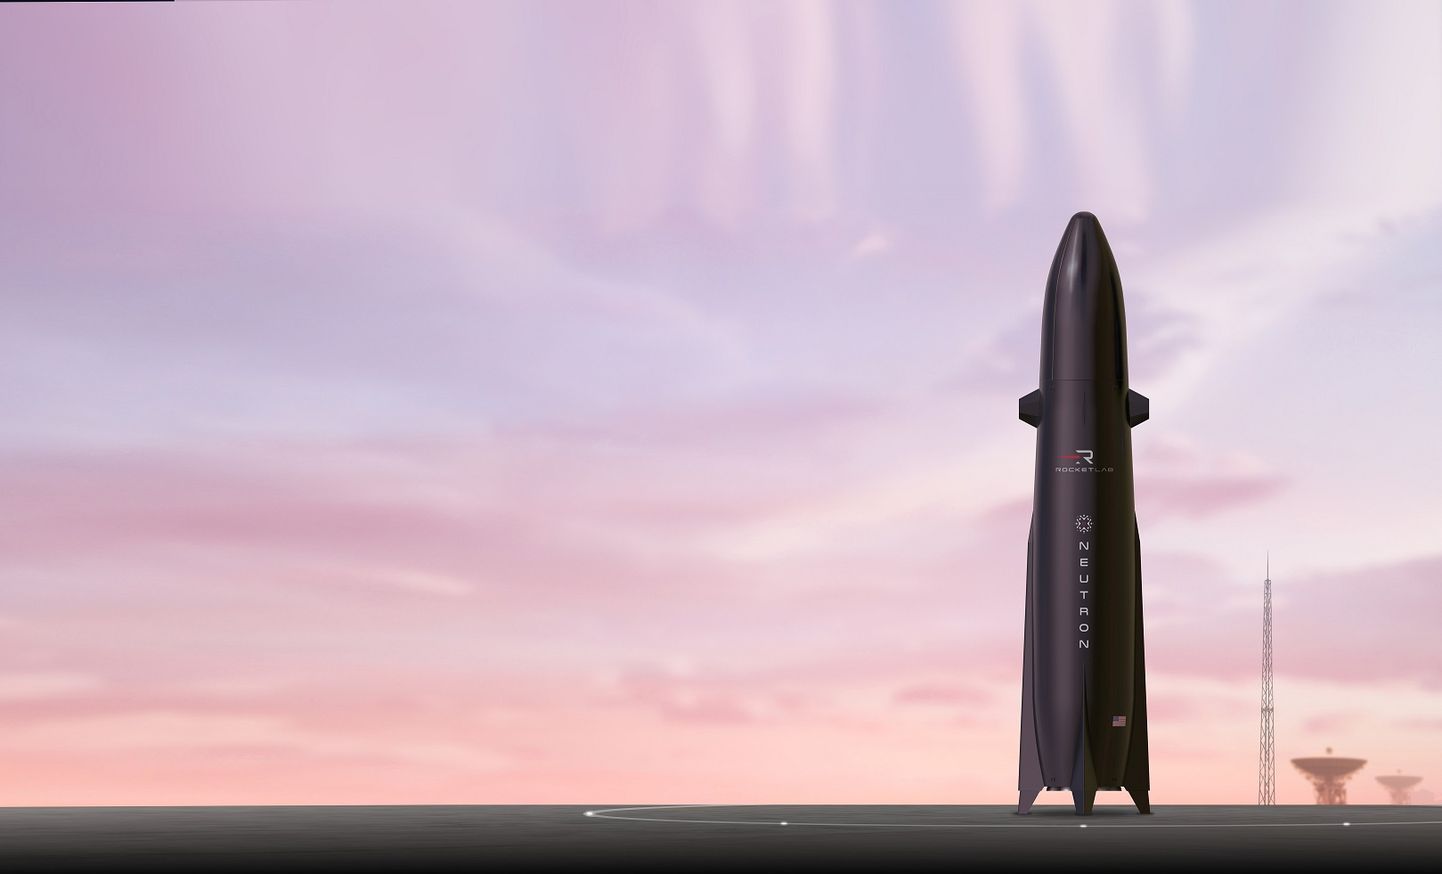 Sellised Rocket labi väikesed ja võiks isegi öelda, et nunnud raketid hakkavad peagi saadetisi sõjakolletesse ja õppustele transportima. See saab võimalikuks tänu erafirmade poolt alla viidud stardikuludele.